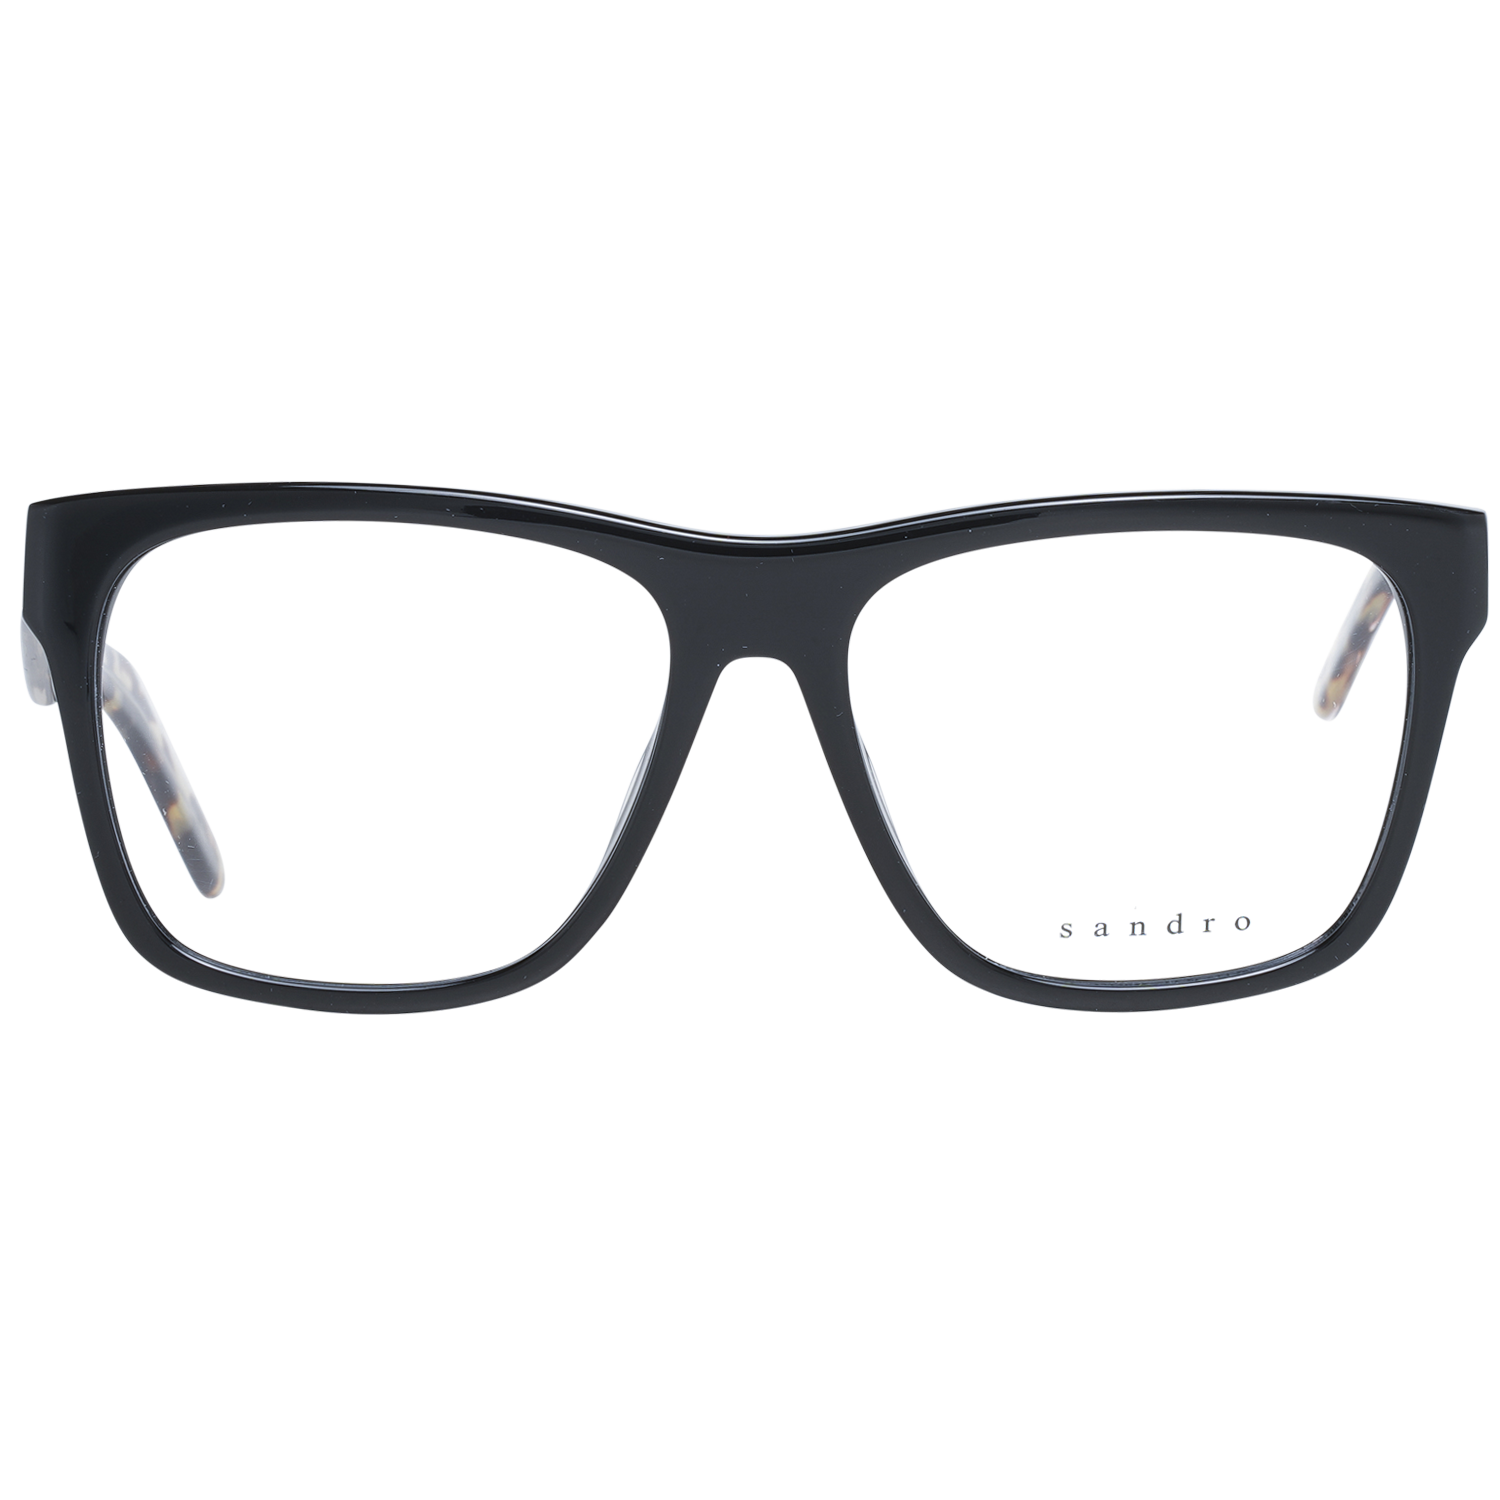 Sandro Frames Sandro Glasses Men Black Square Frames SD1002 102 54mm Eyeglasses Eyewear UK USA Australia 